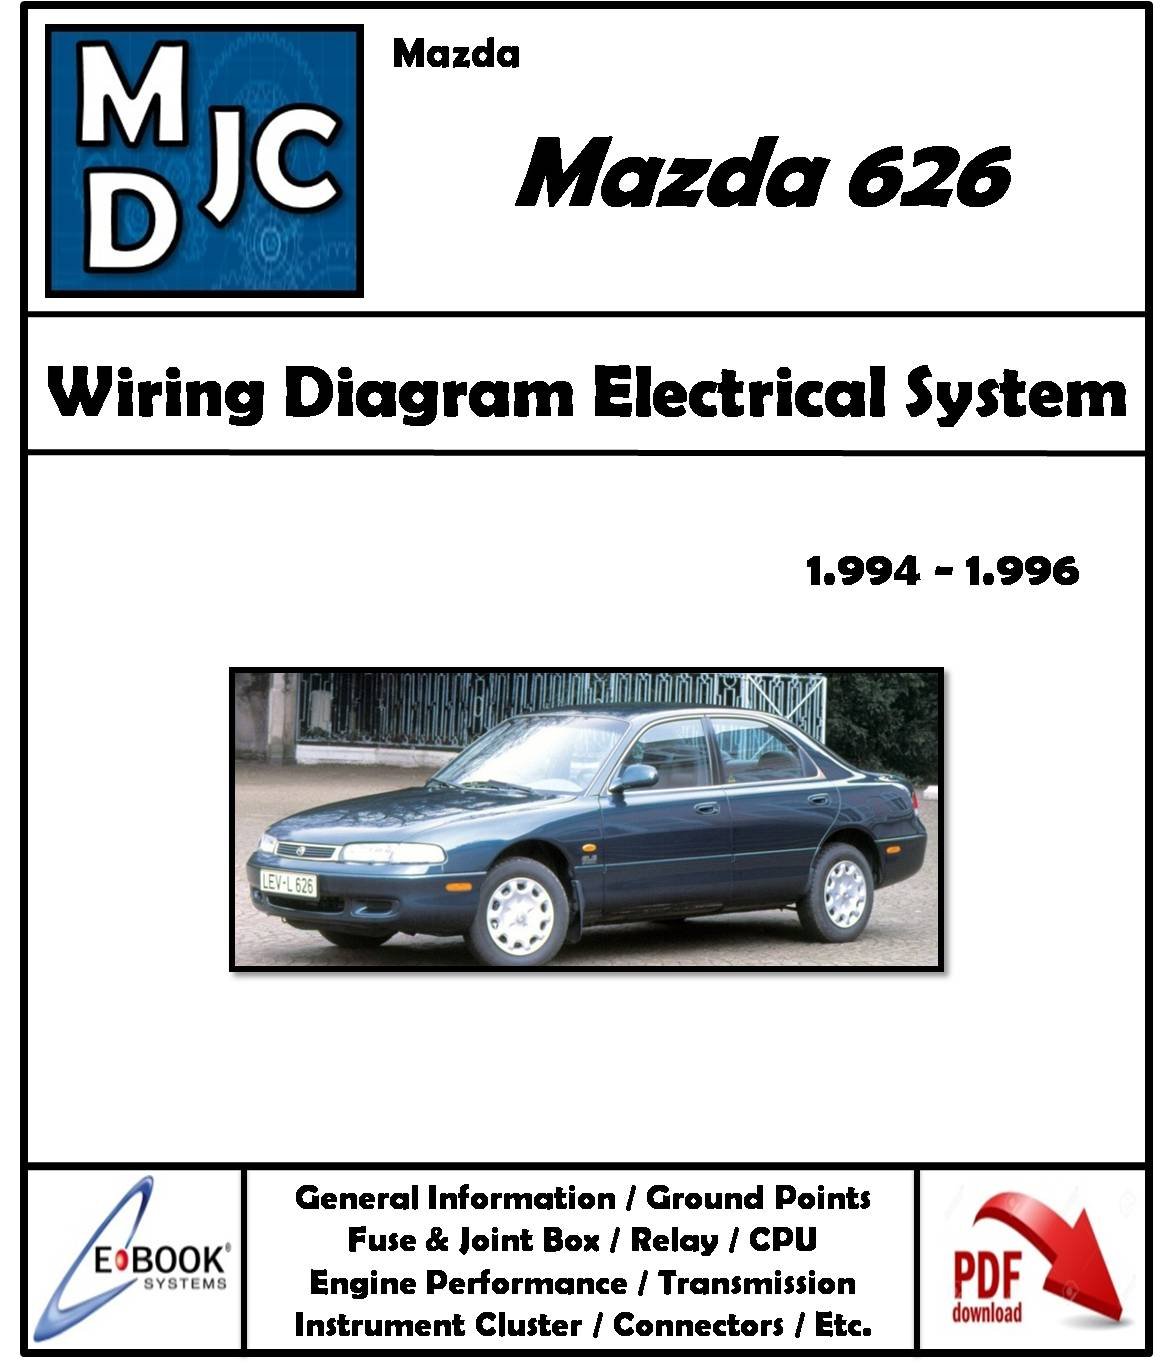 Mazda 626 Matsuri 1994 - 1996